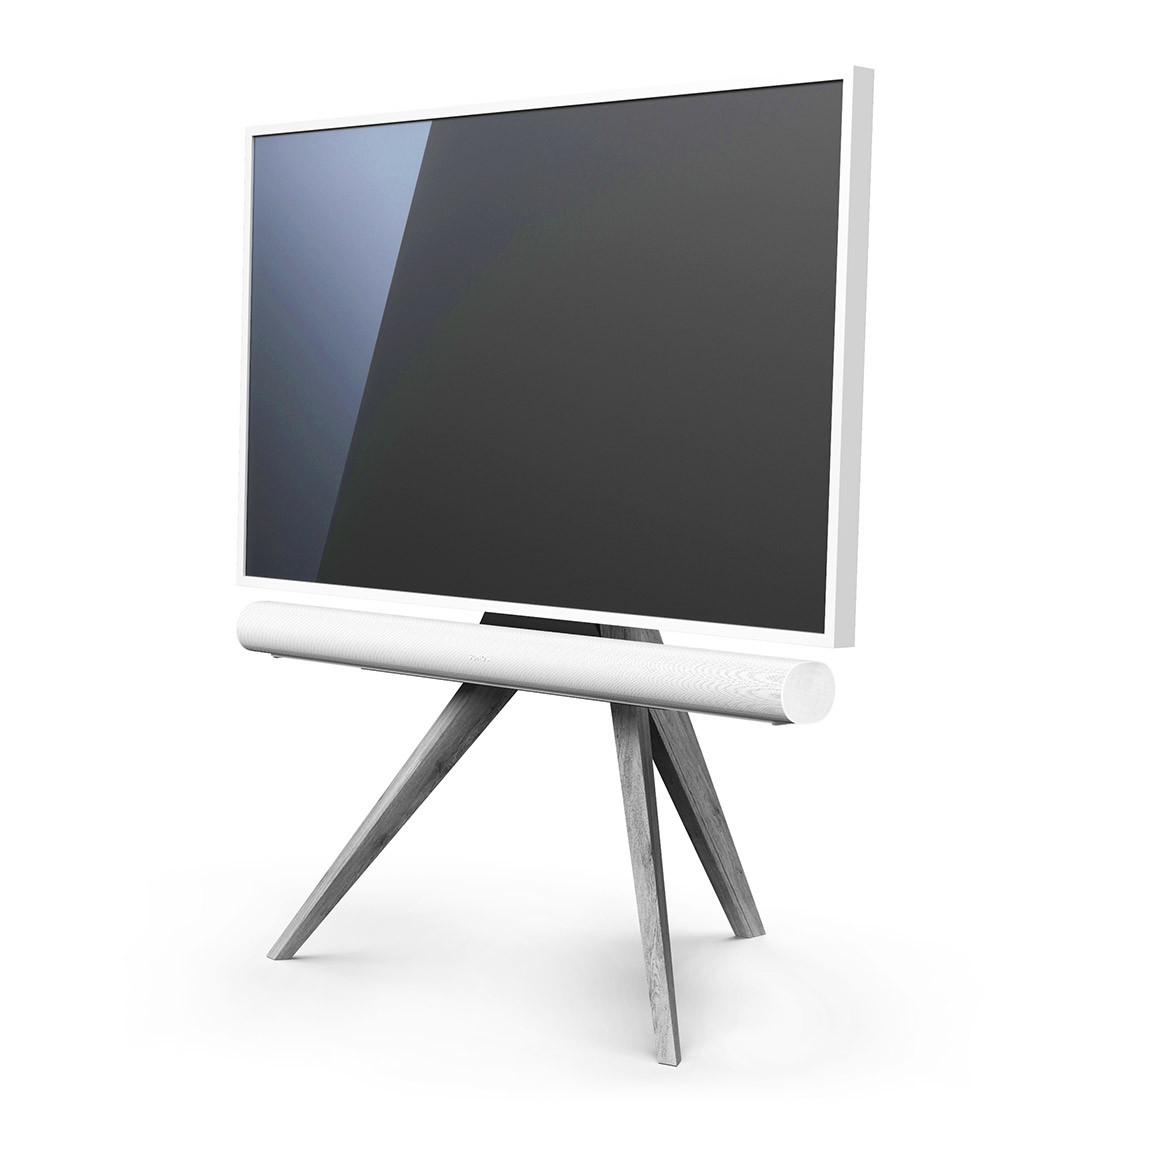 Spectral Art AX TV-Stand - Eiche grau mit Fernseher und Sonos Arc schräge Ansicht